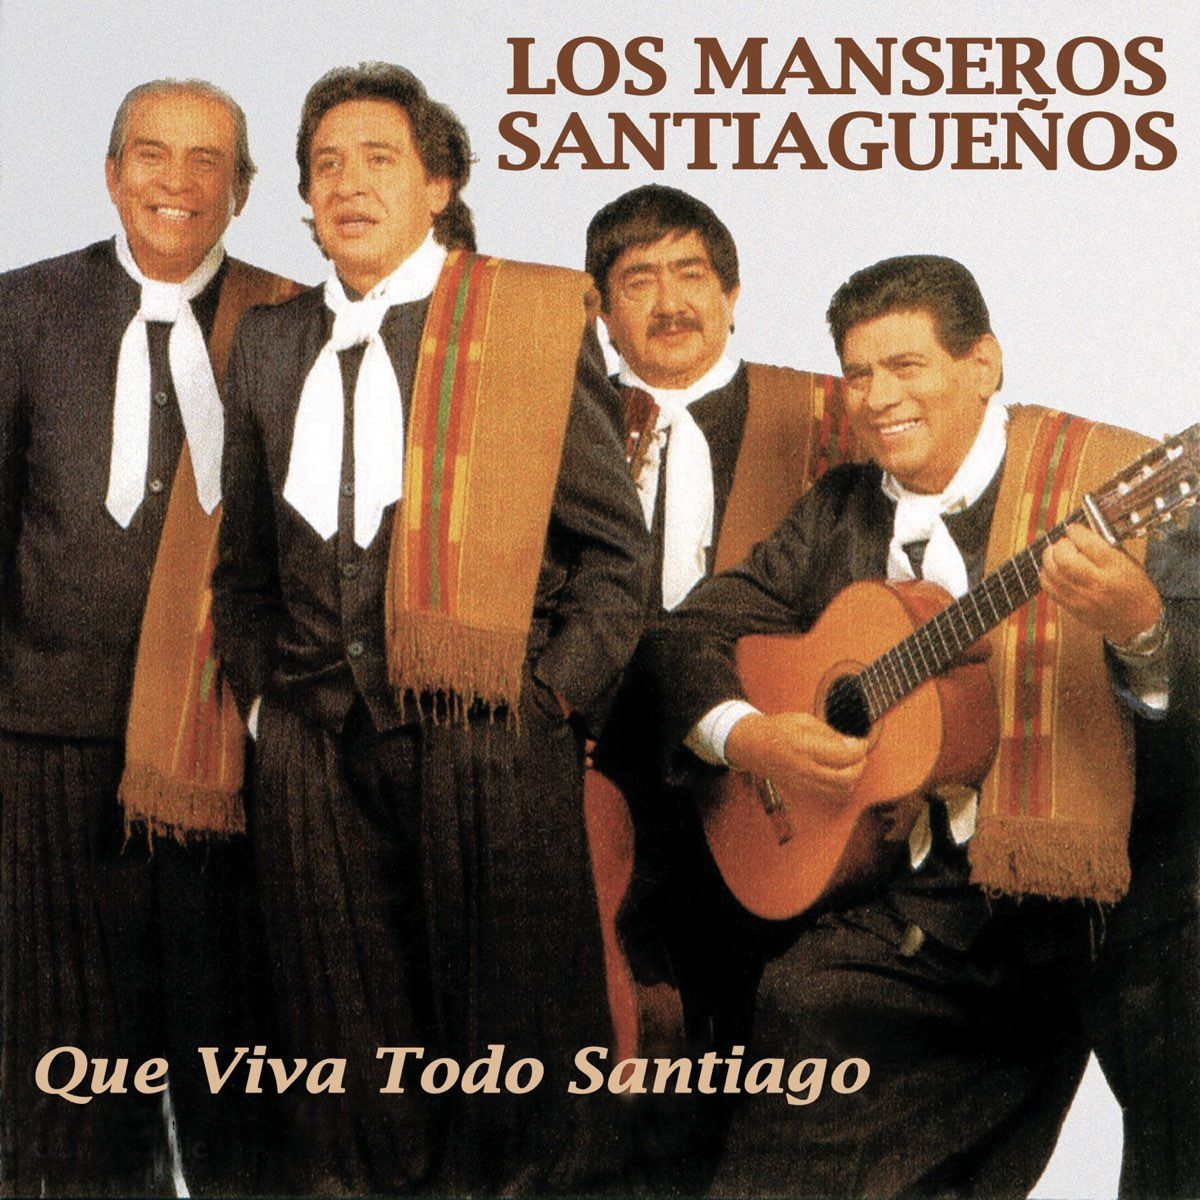 Los Manseros Santiagueños. 